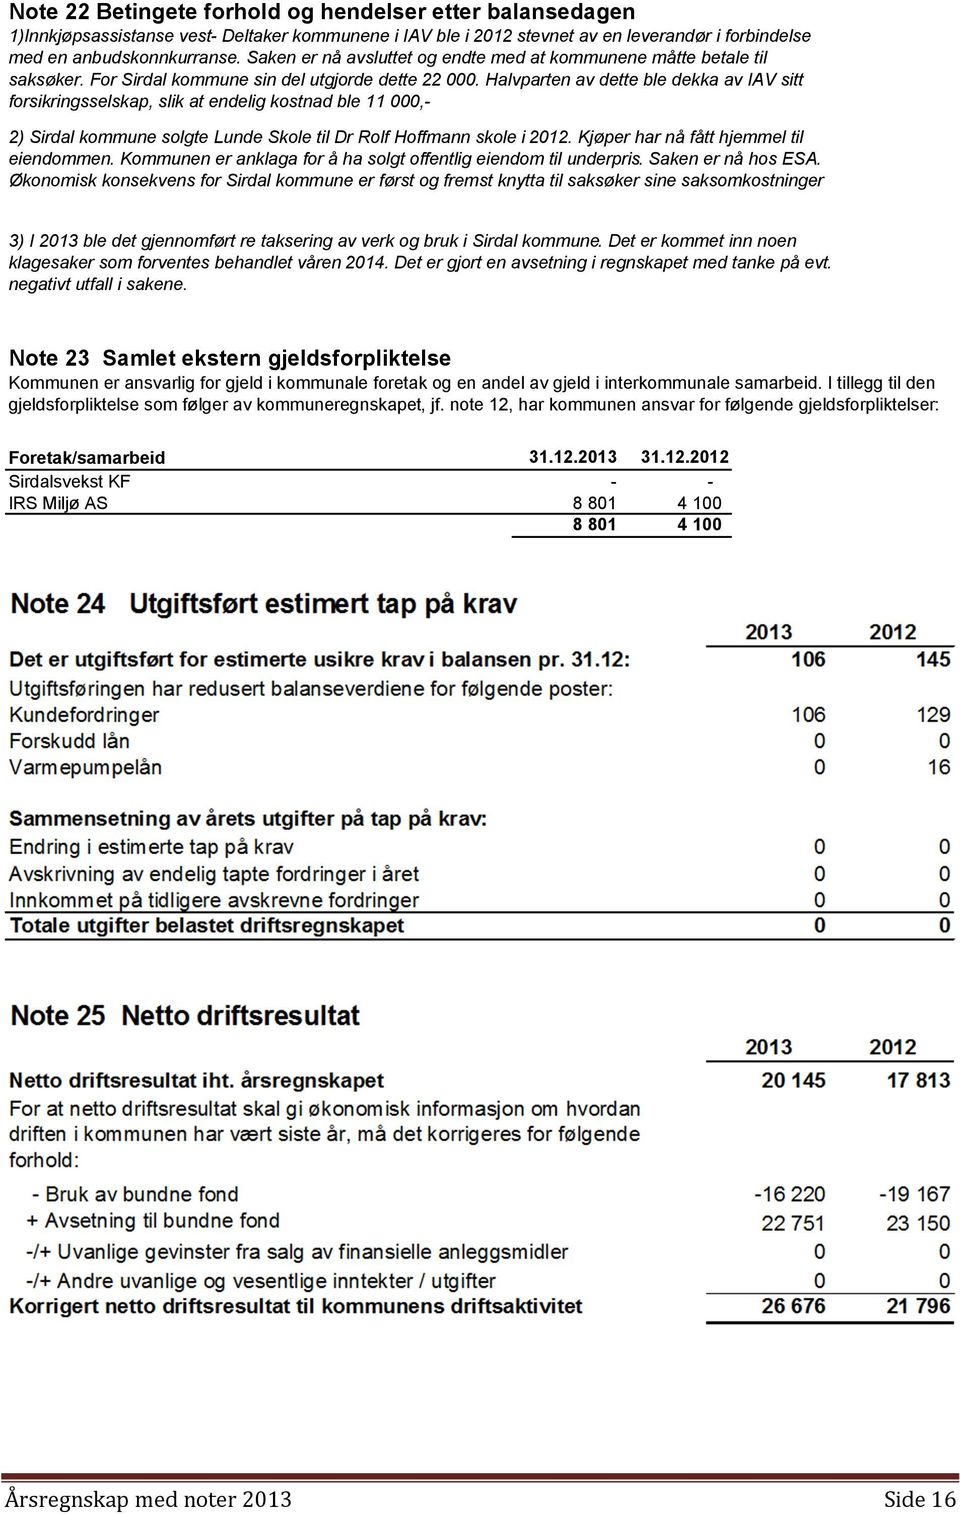 Halvparten av dette ble dekka av IAV sitt forsikringsselskap, slik at endelig kostnad ble 11 000,2) Sirdal kommune solgte Lunde Skole til Dr Rolf Hoffmann skole i 2012.